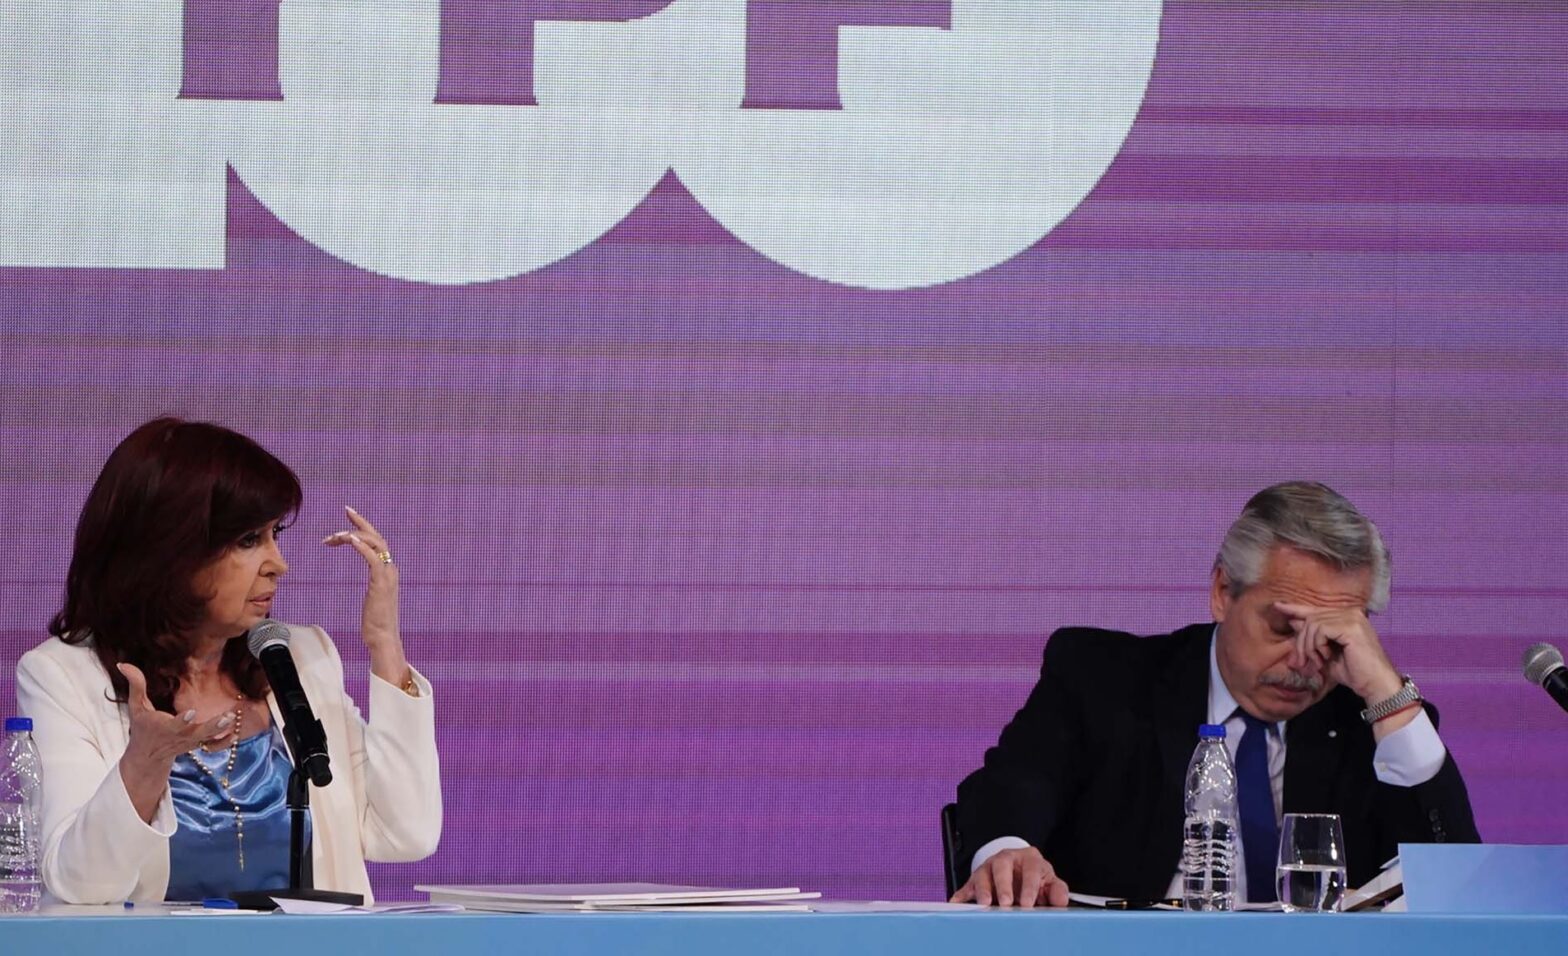 Cristina Fernández de Kirchner ; Alberto Fernández ; Presidente de la Nación ; Vicepresidenta de la Nación y presidenta del Senado de la Nación